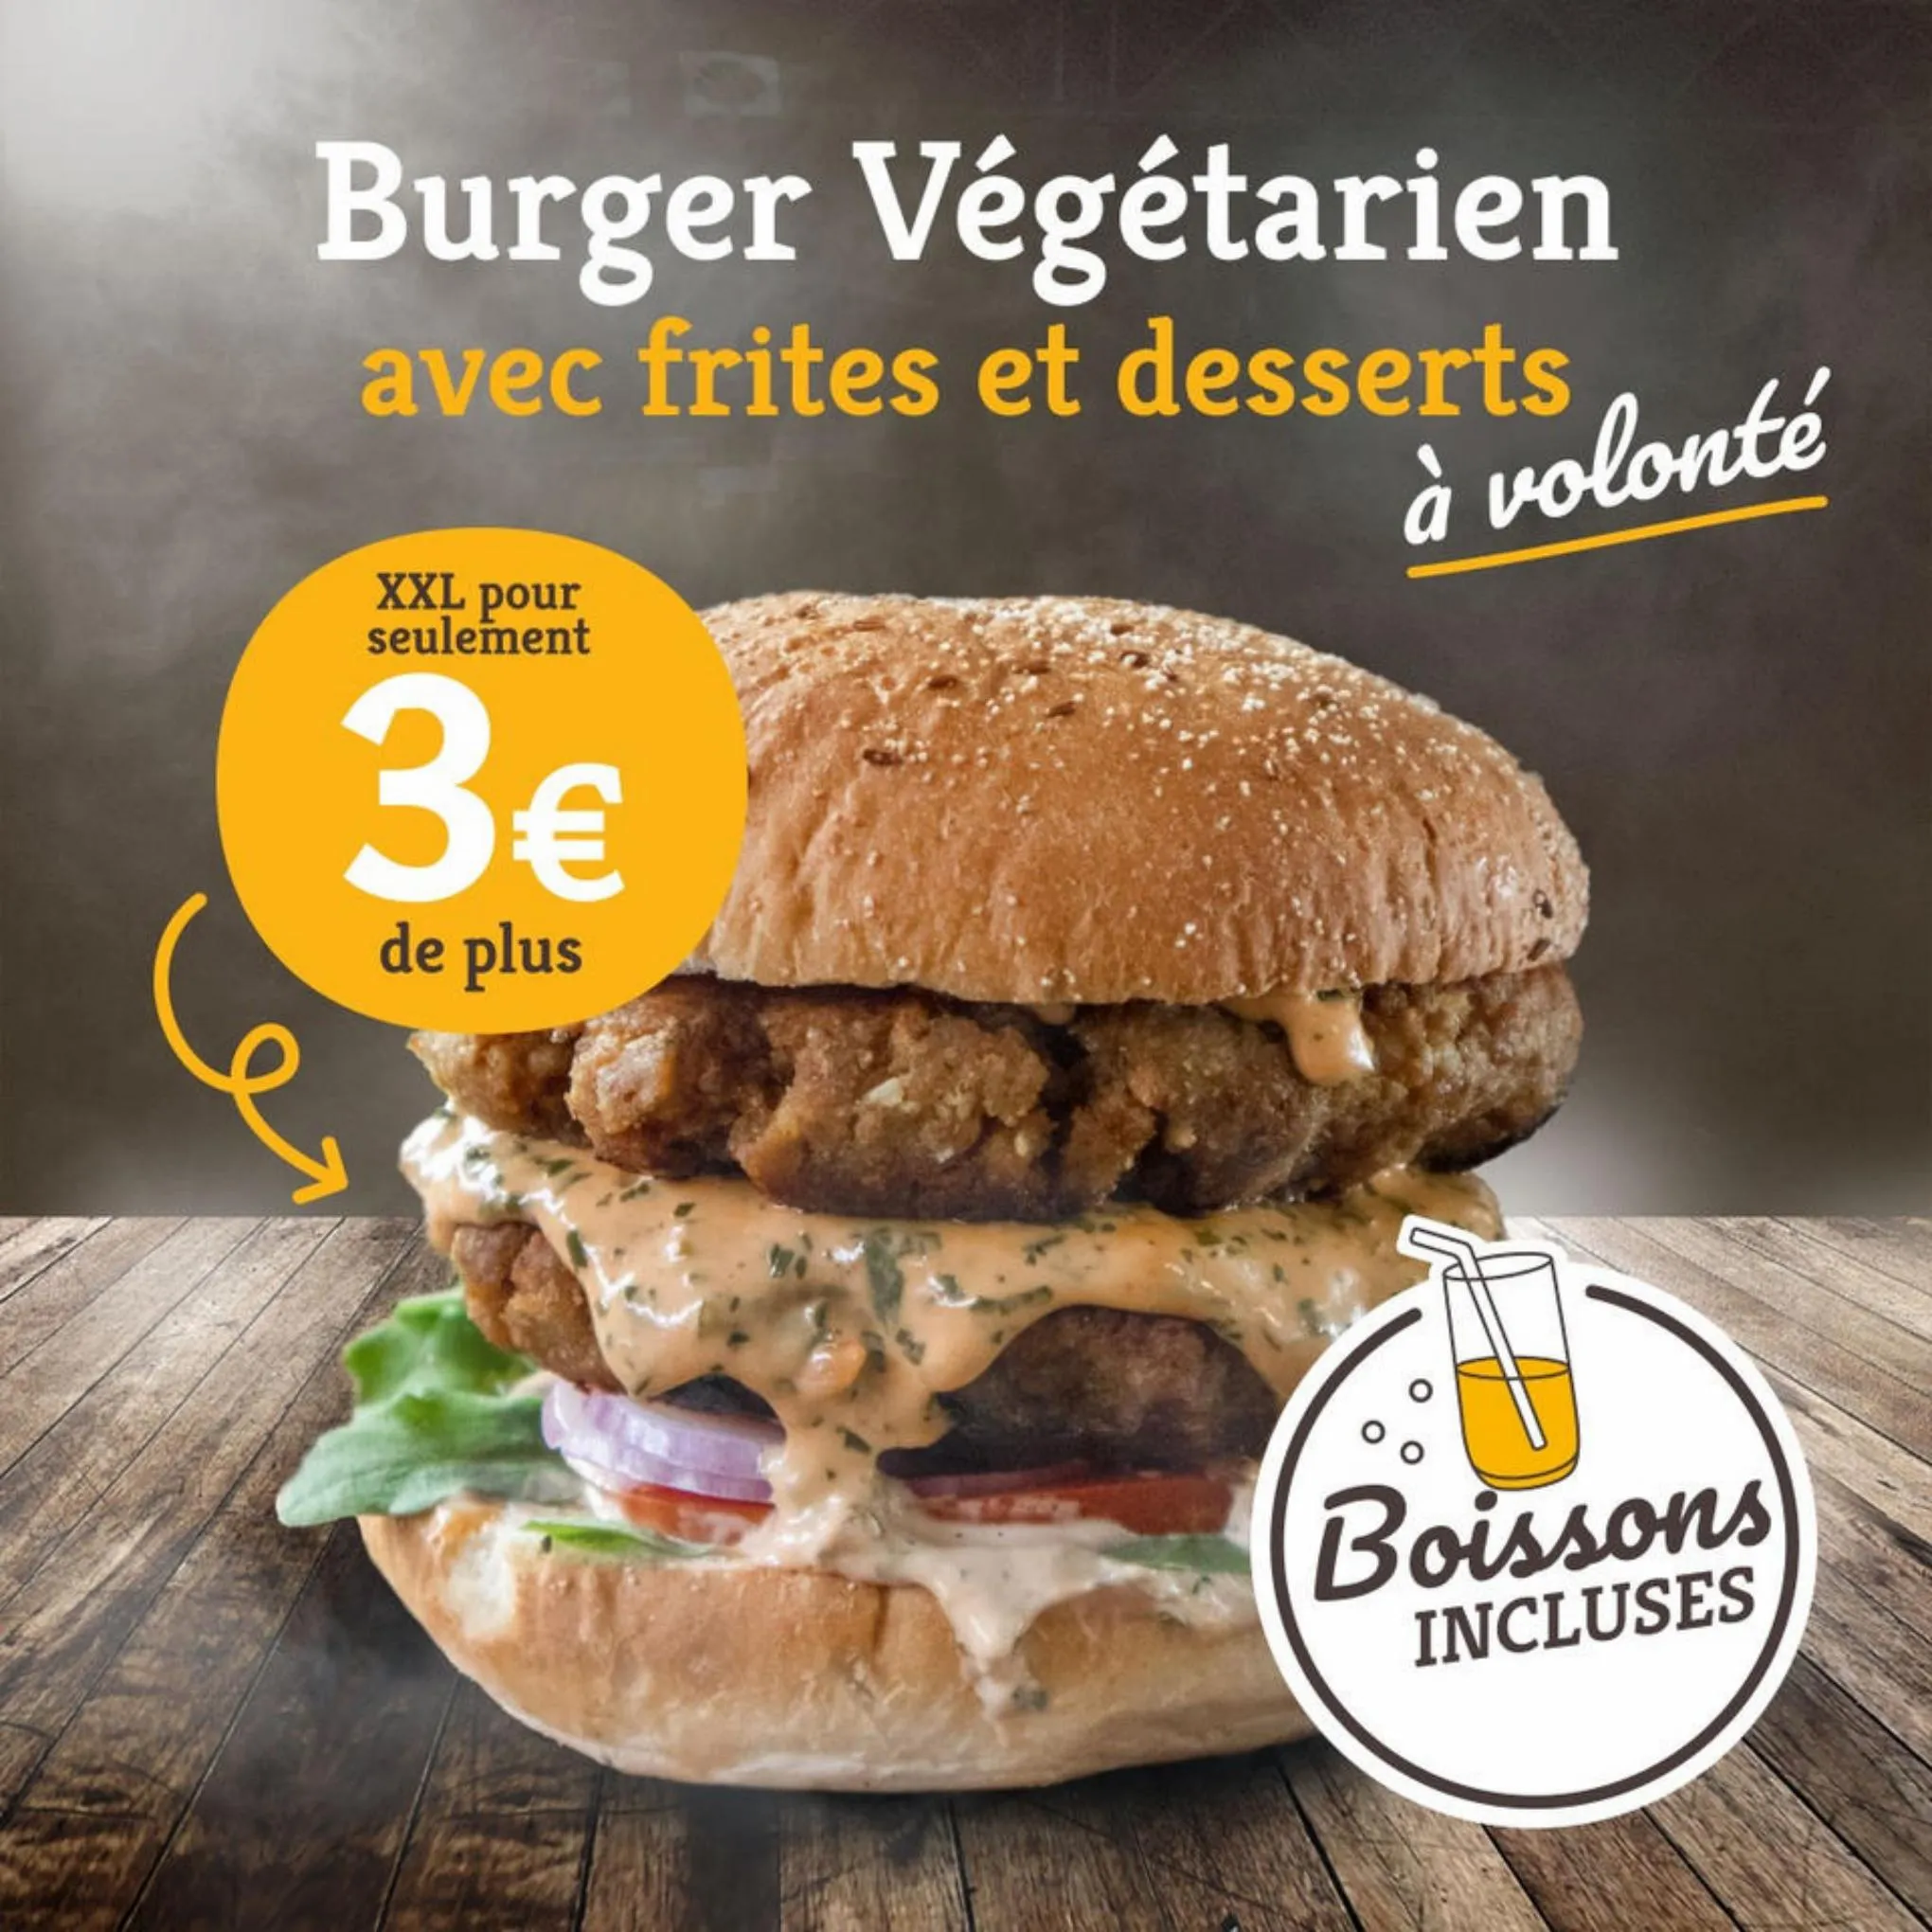 Catalogue Festival des Burgers, page 00005